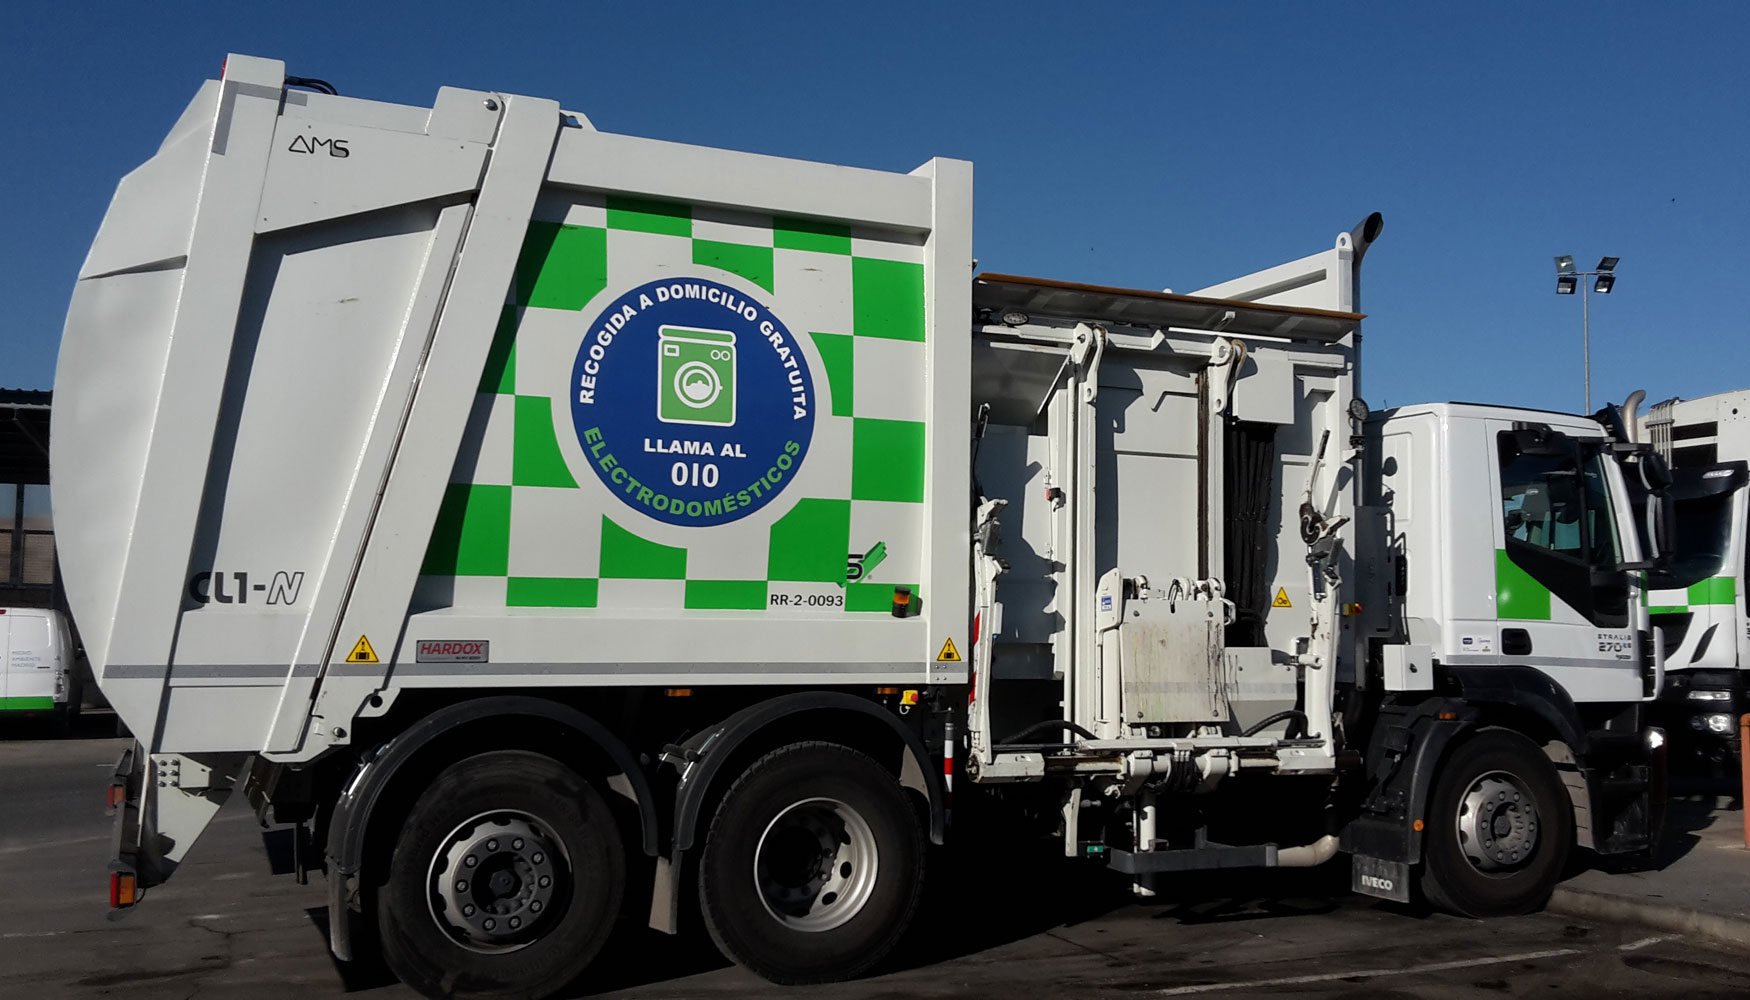 Los recolectores de carga lateral de AMS han permitido ganar en eficiencia a la hora de recoger los residuos en Madrid...